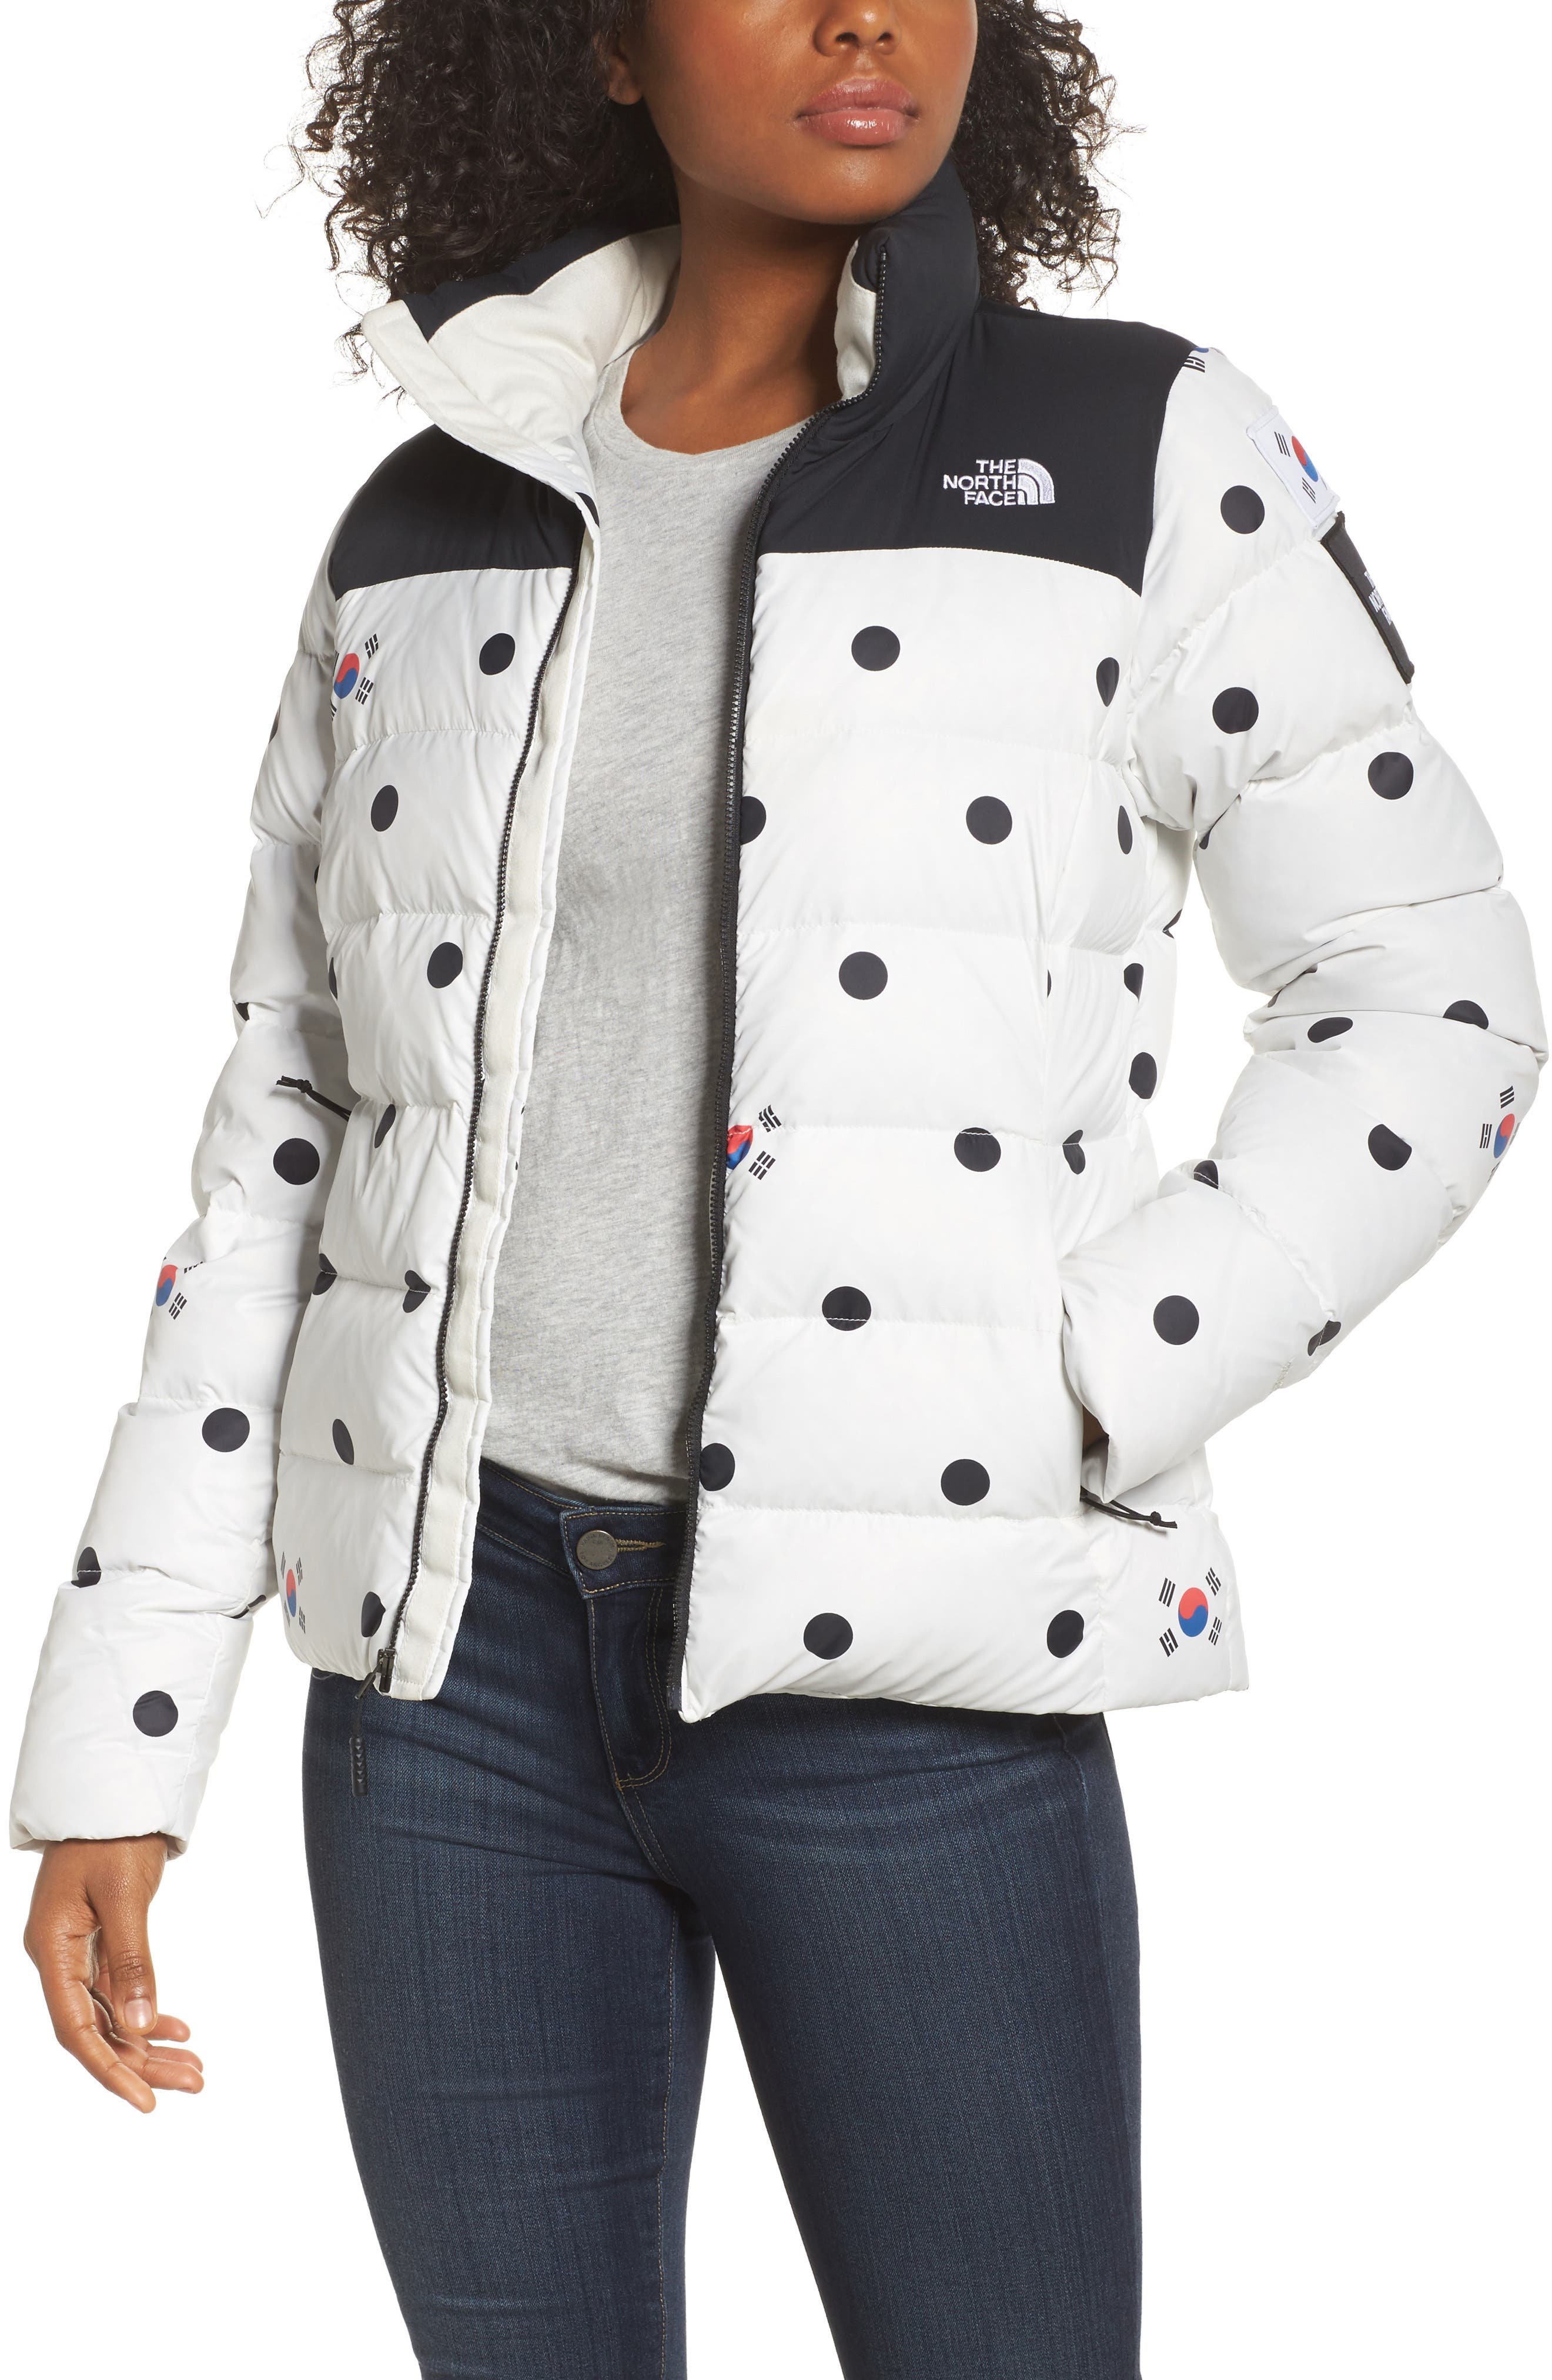 north face jacket polka dots